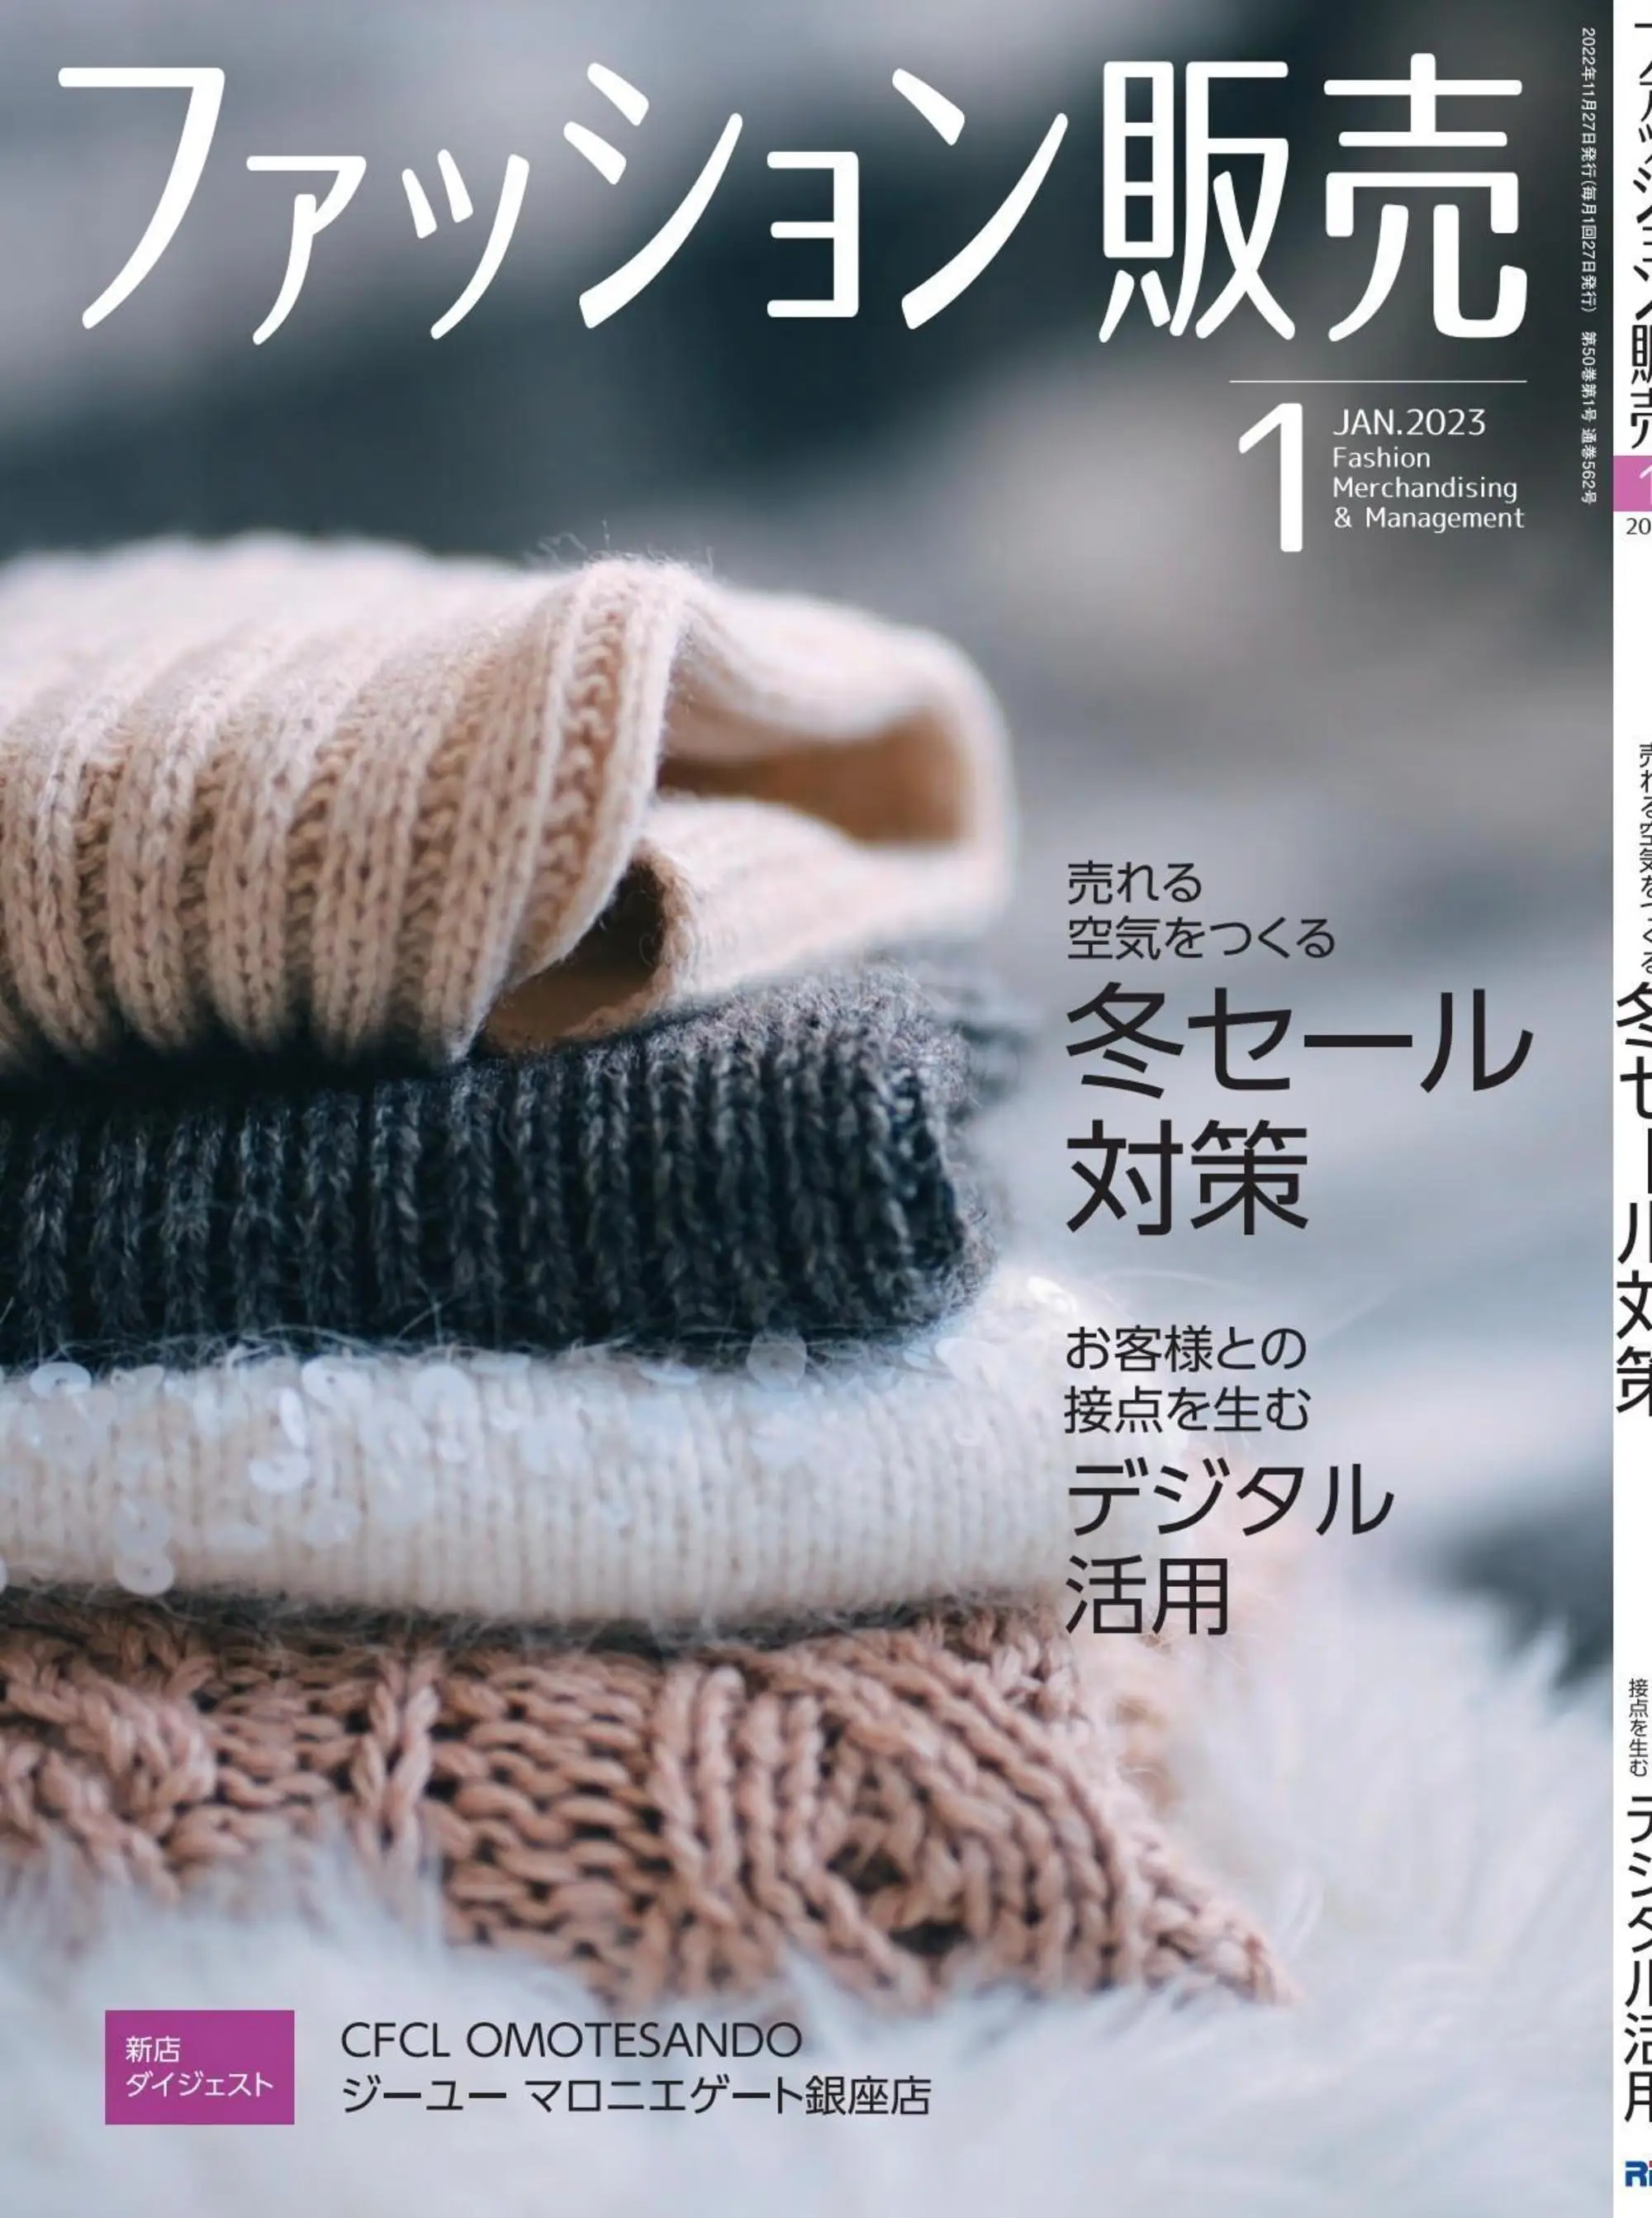 ファッション販売 时装销售商业杂志日文原版 2023年1月